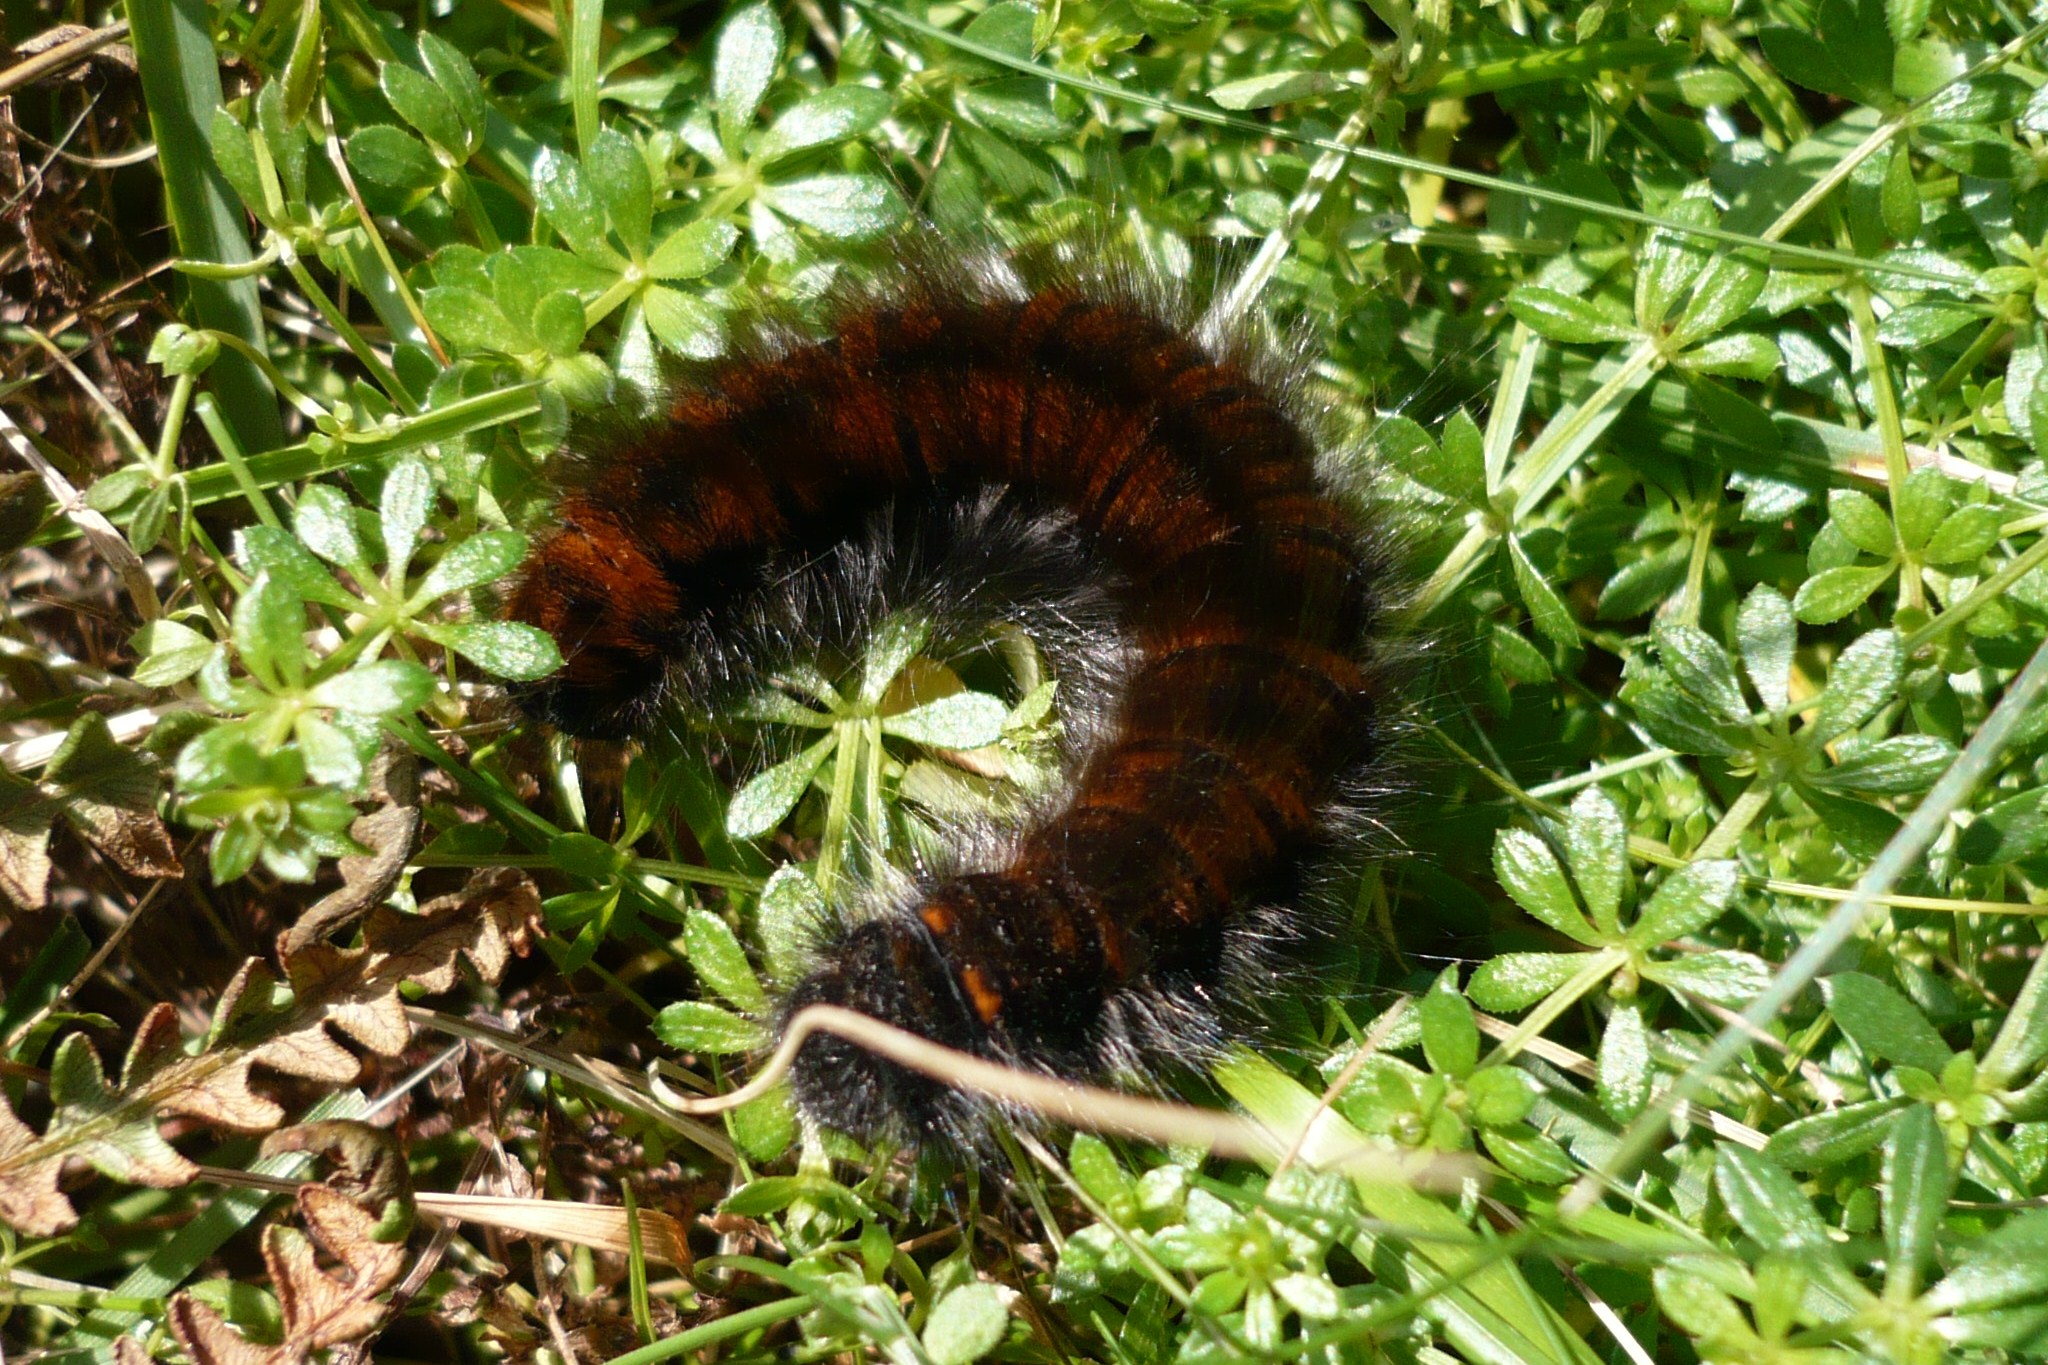 NaturePlus: Hairy caterpillar